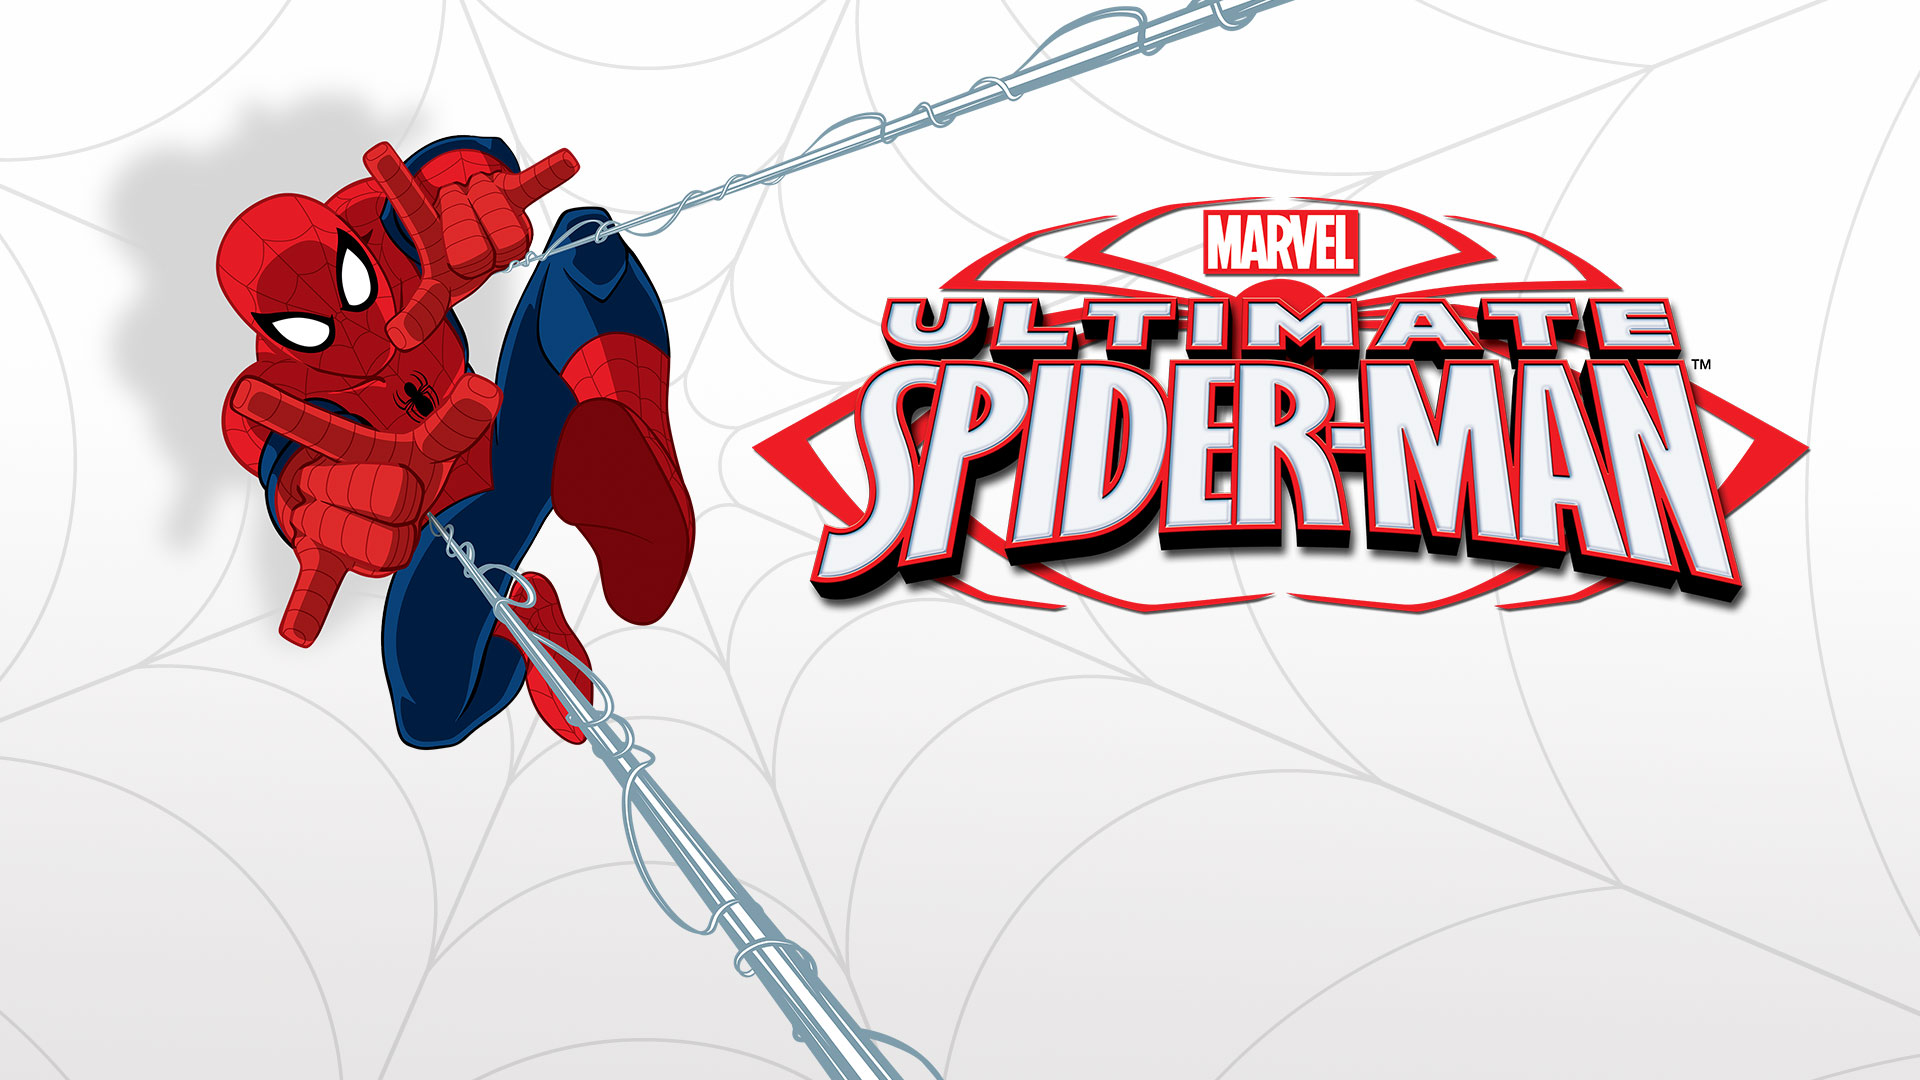 Marvel's Ultimate Spider-Man - Disney+ Hotstar